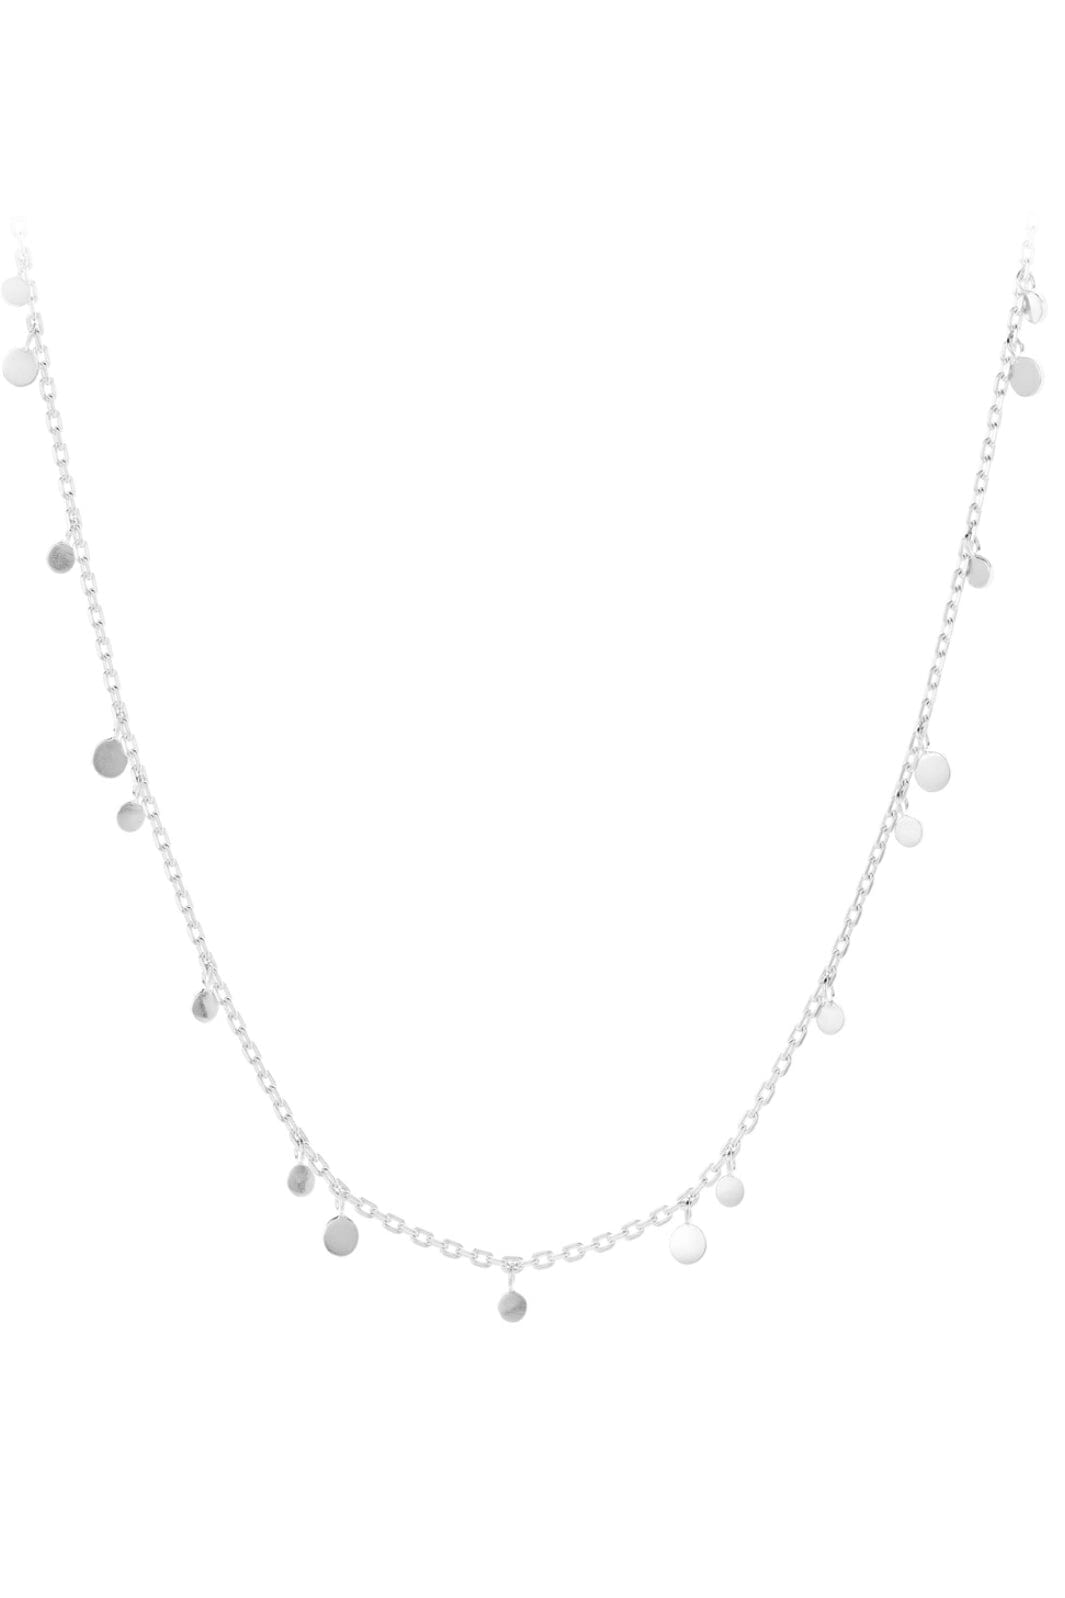 Pernille Corydon Jewellery - Glow Halskæder - Silver Halskæder 